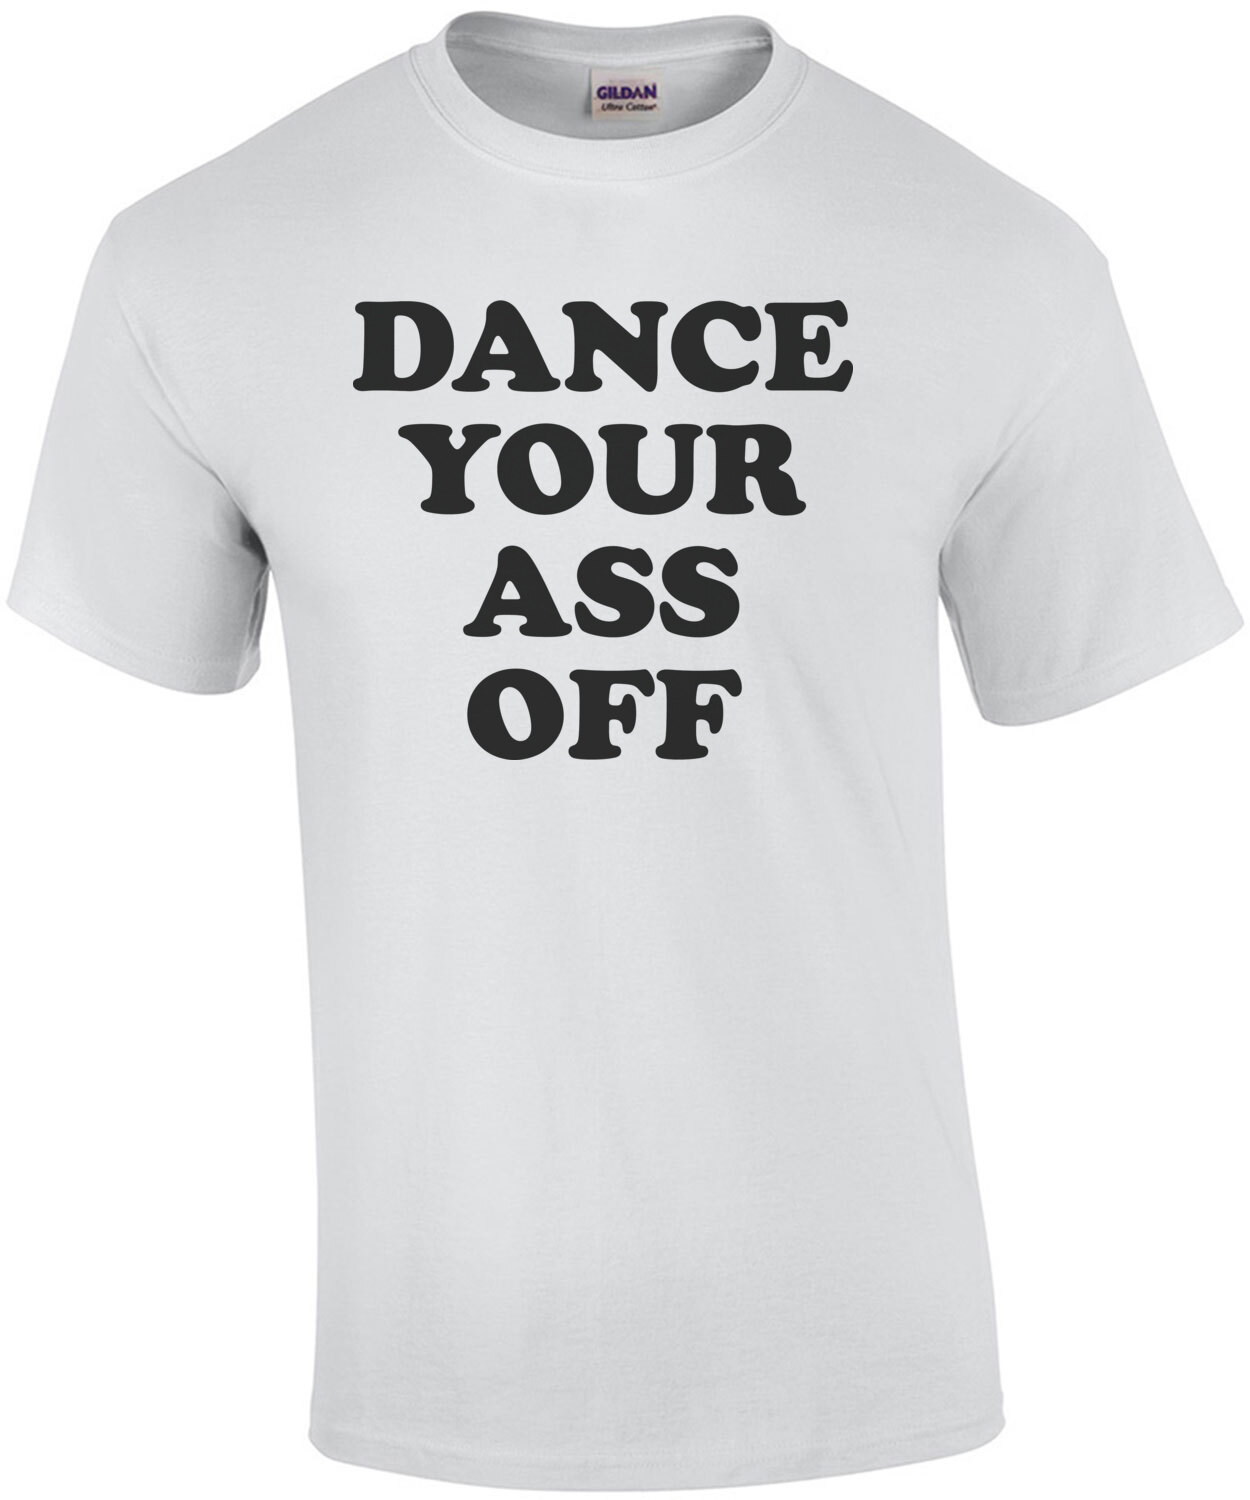 Dance your ass off - footloose t-shirt - 80's t-shirt